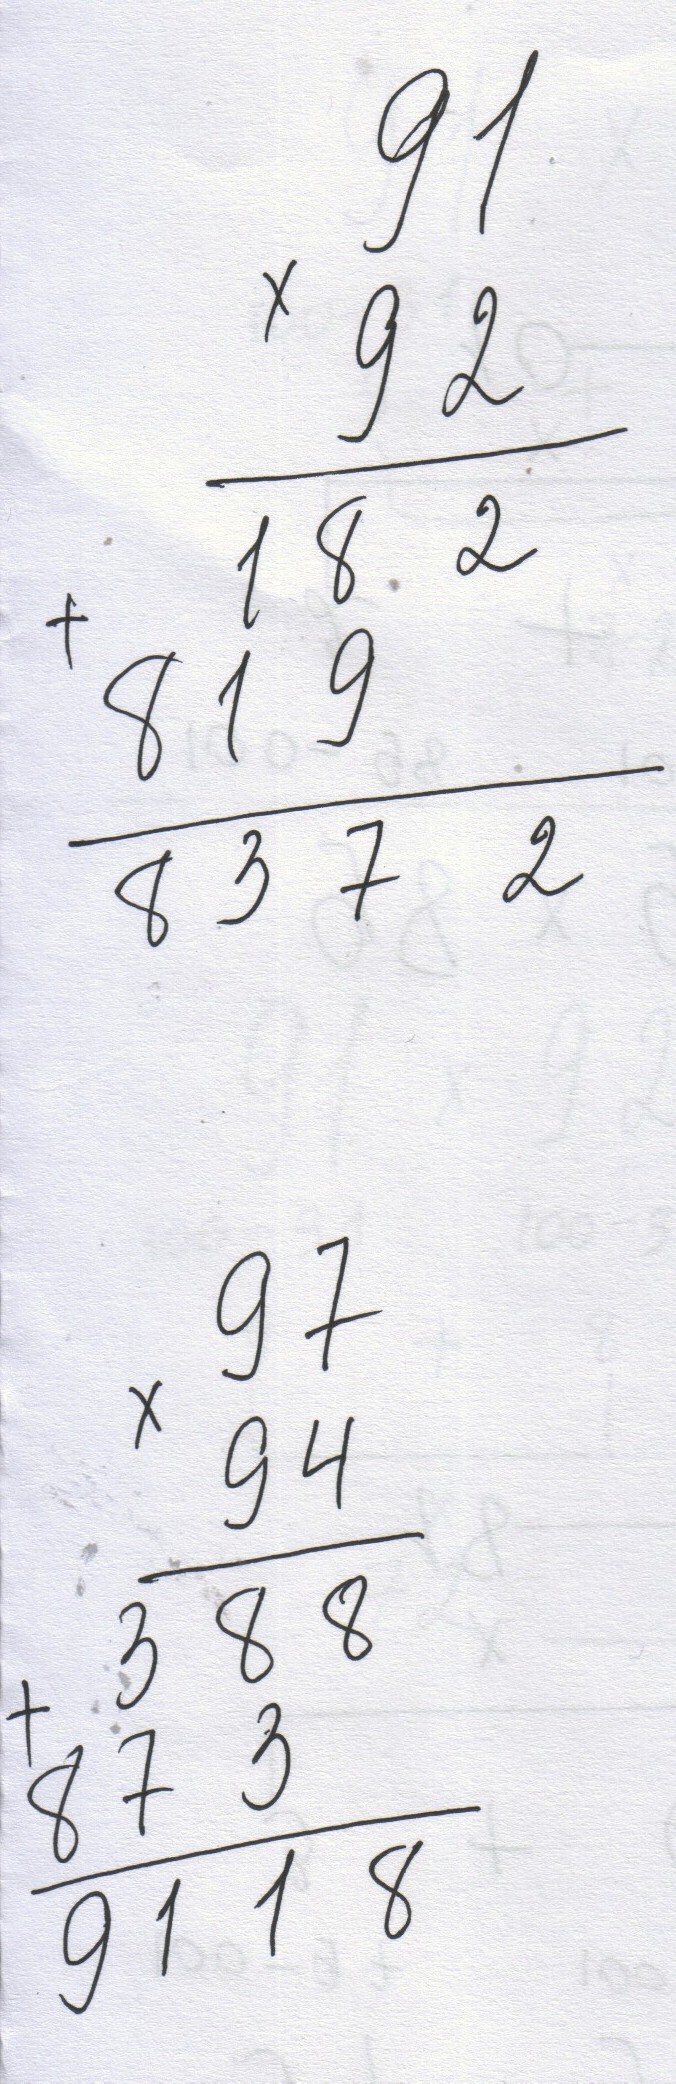 Конспект исследовательской работы «Необычный способ умножения чисел от 91 до 99 между собой»